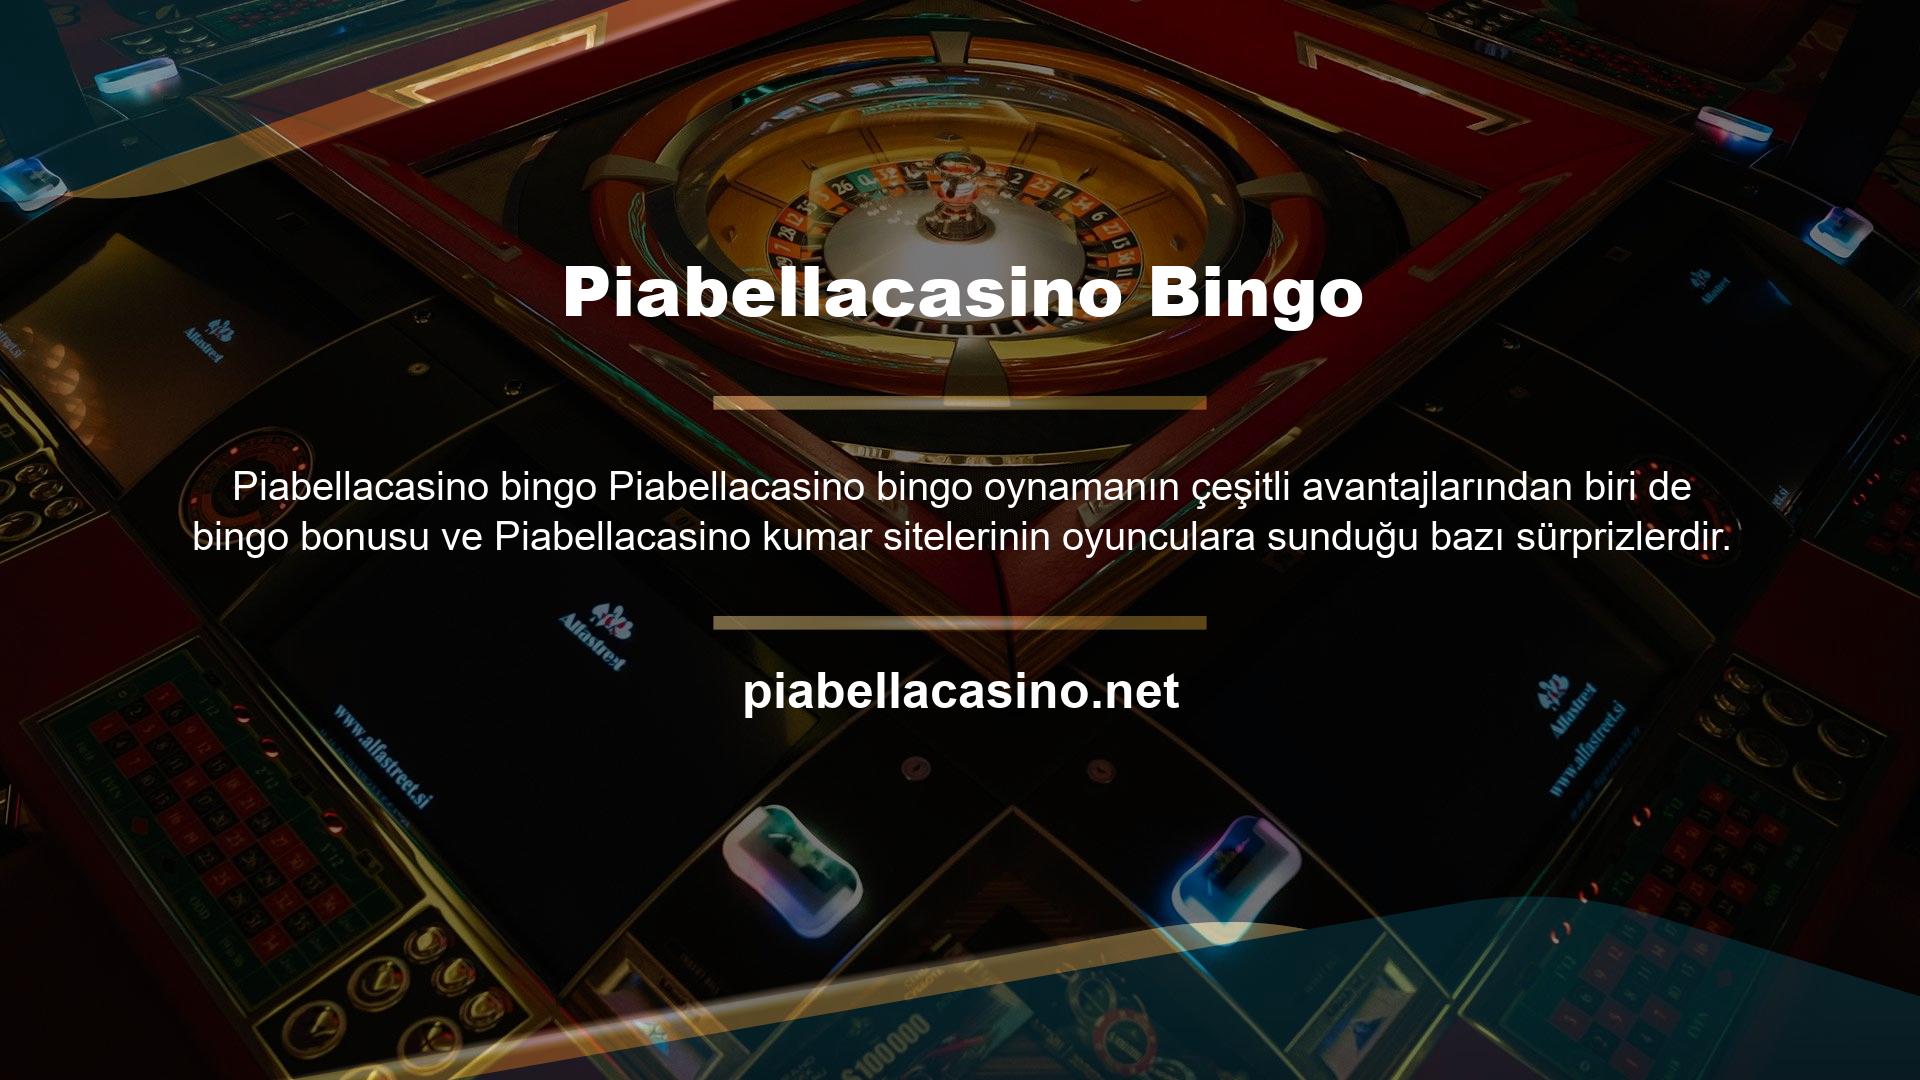 Bingo neden Piabellacasino diye sorulduğunda verilebilecek en net cevap Piabellacasino birçok oyunda olduğu gibi bingo oyuncularına farklı oranlar ve bonuslar sunduğudur